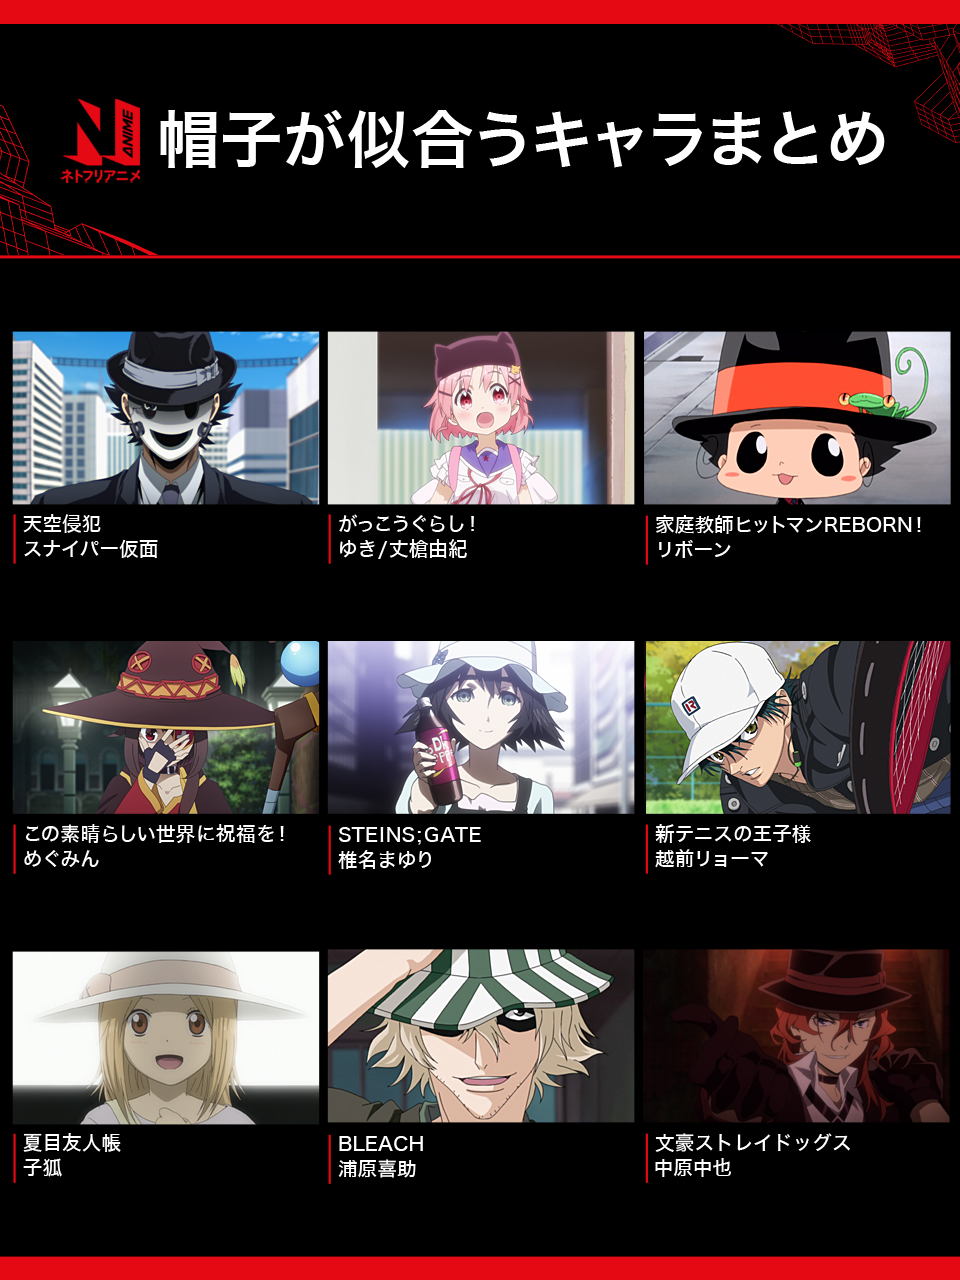 Netflix Japan Anime 在 Twitter 上 ネトフリ で配信中のアニメから 帽子が似合うキャラクターを一部集めてみました 他にも帽子の似合う個性的なアニメキャラはたくさんいますね 皆さんの好きな帽子キャラは ネトフリアニメ 帽子の日 T Co